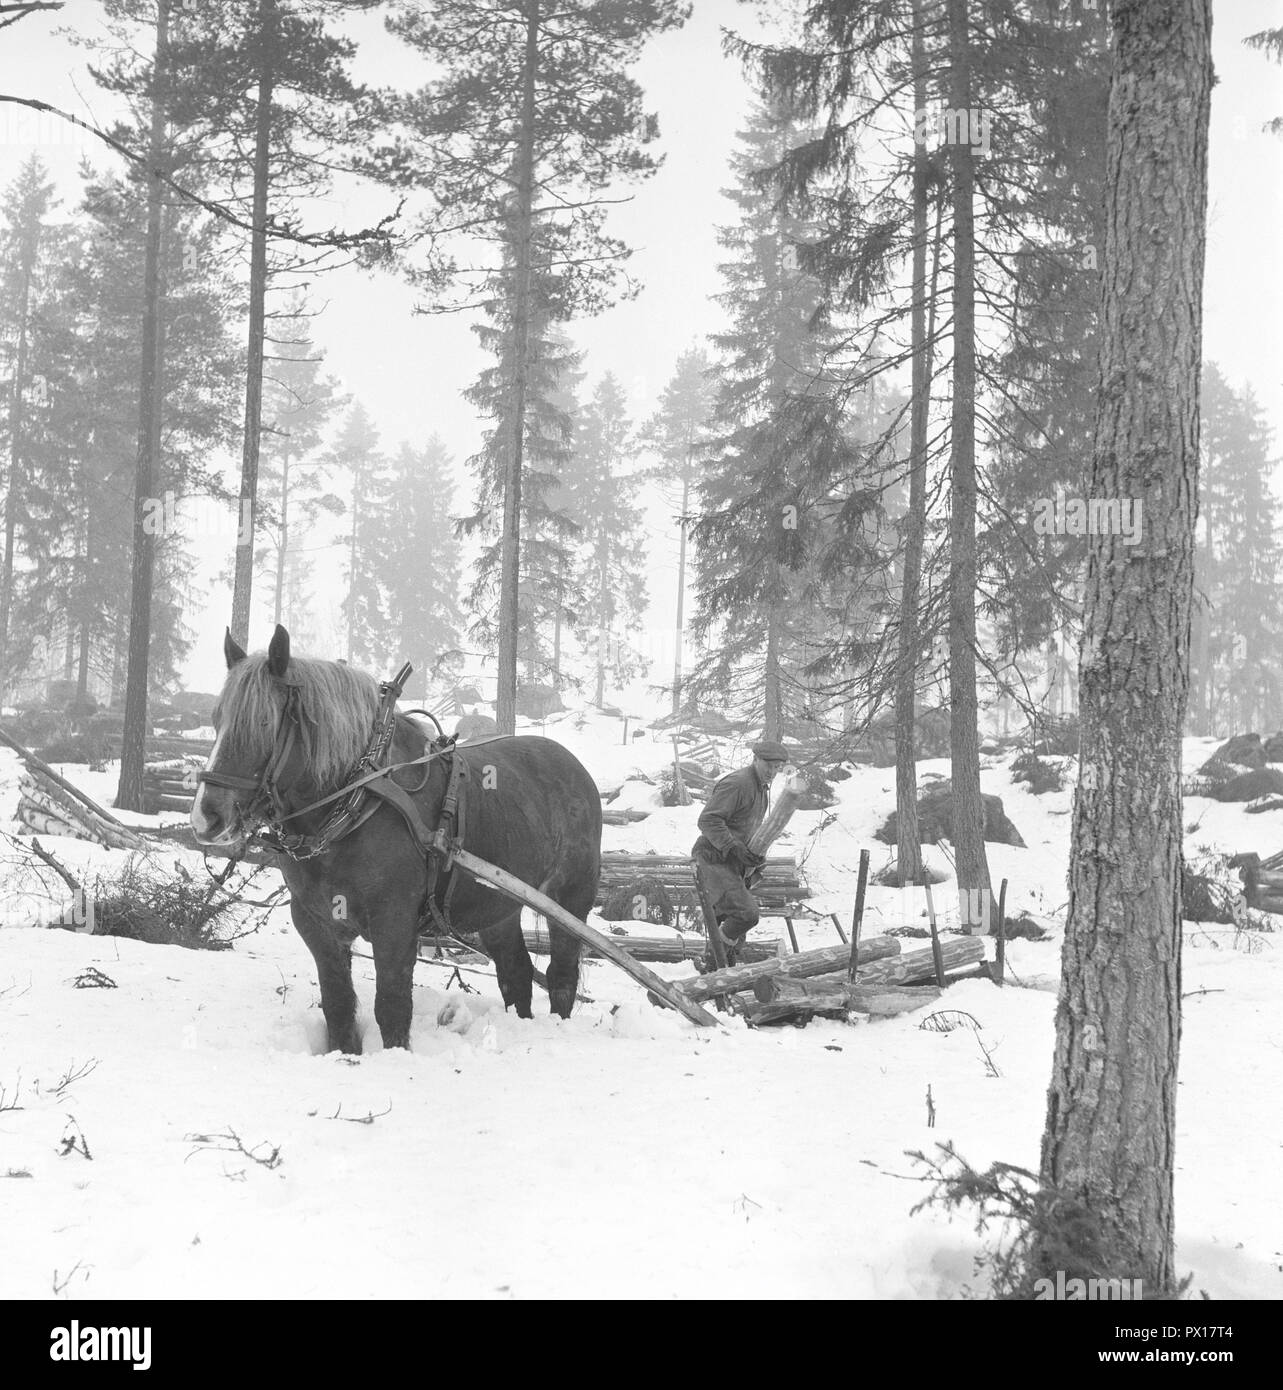 Travaillant dans la forêt dans les années 1950. Un homme travaille dans sa forêt et coupe des arbres pour les transporter sur un traîneau avec son cheval à son domicile ou la scierie. La Suède Mars 1959 Banque D'Images